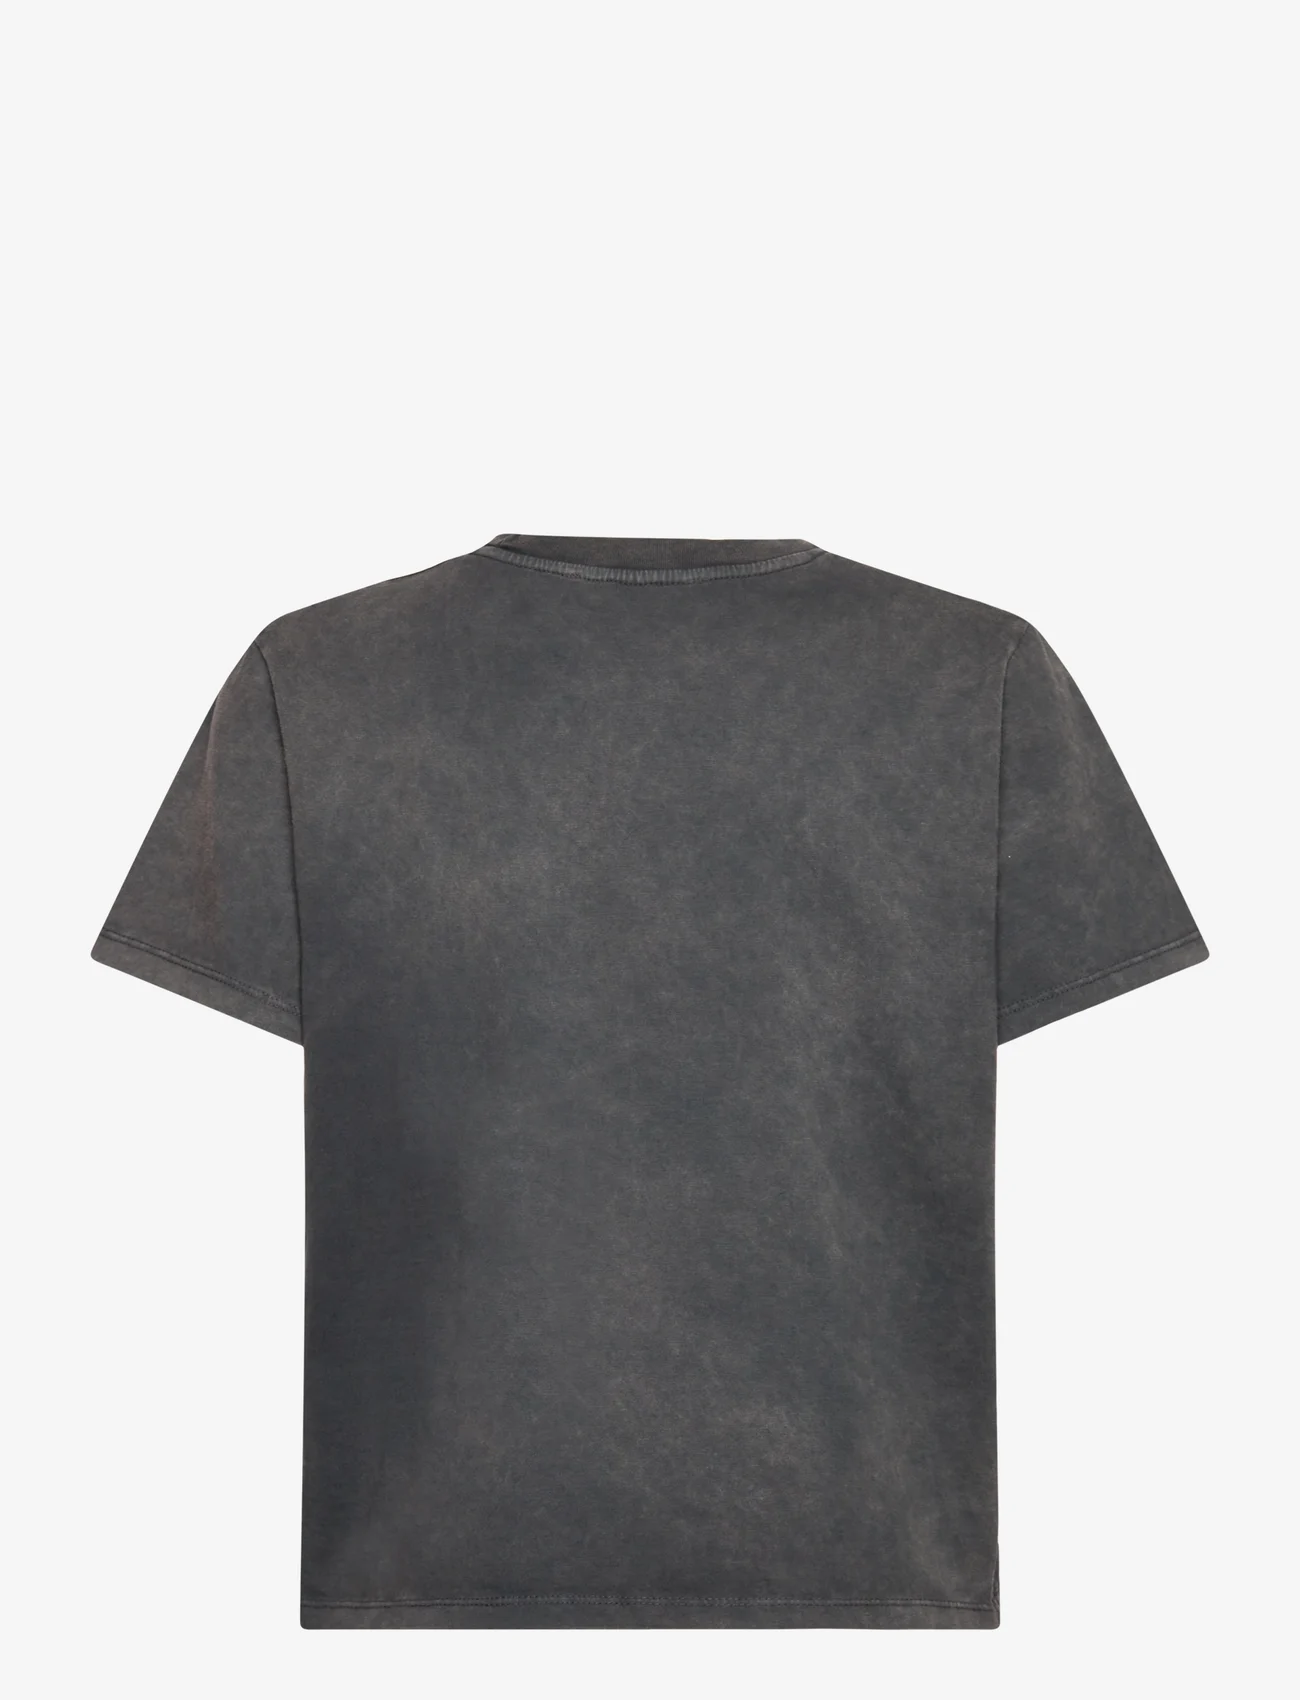 Sofie Schnoor - T-shirt - laveste priser - washed black - 1